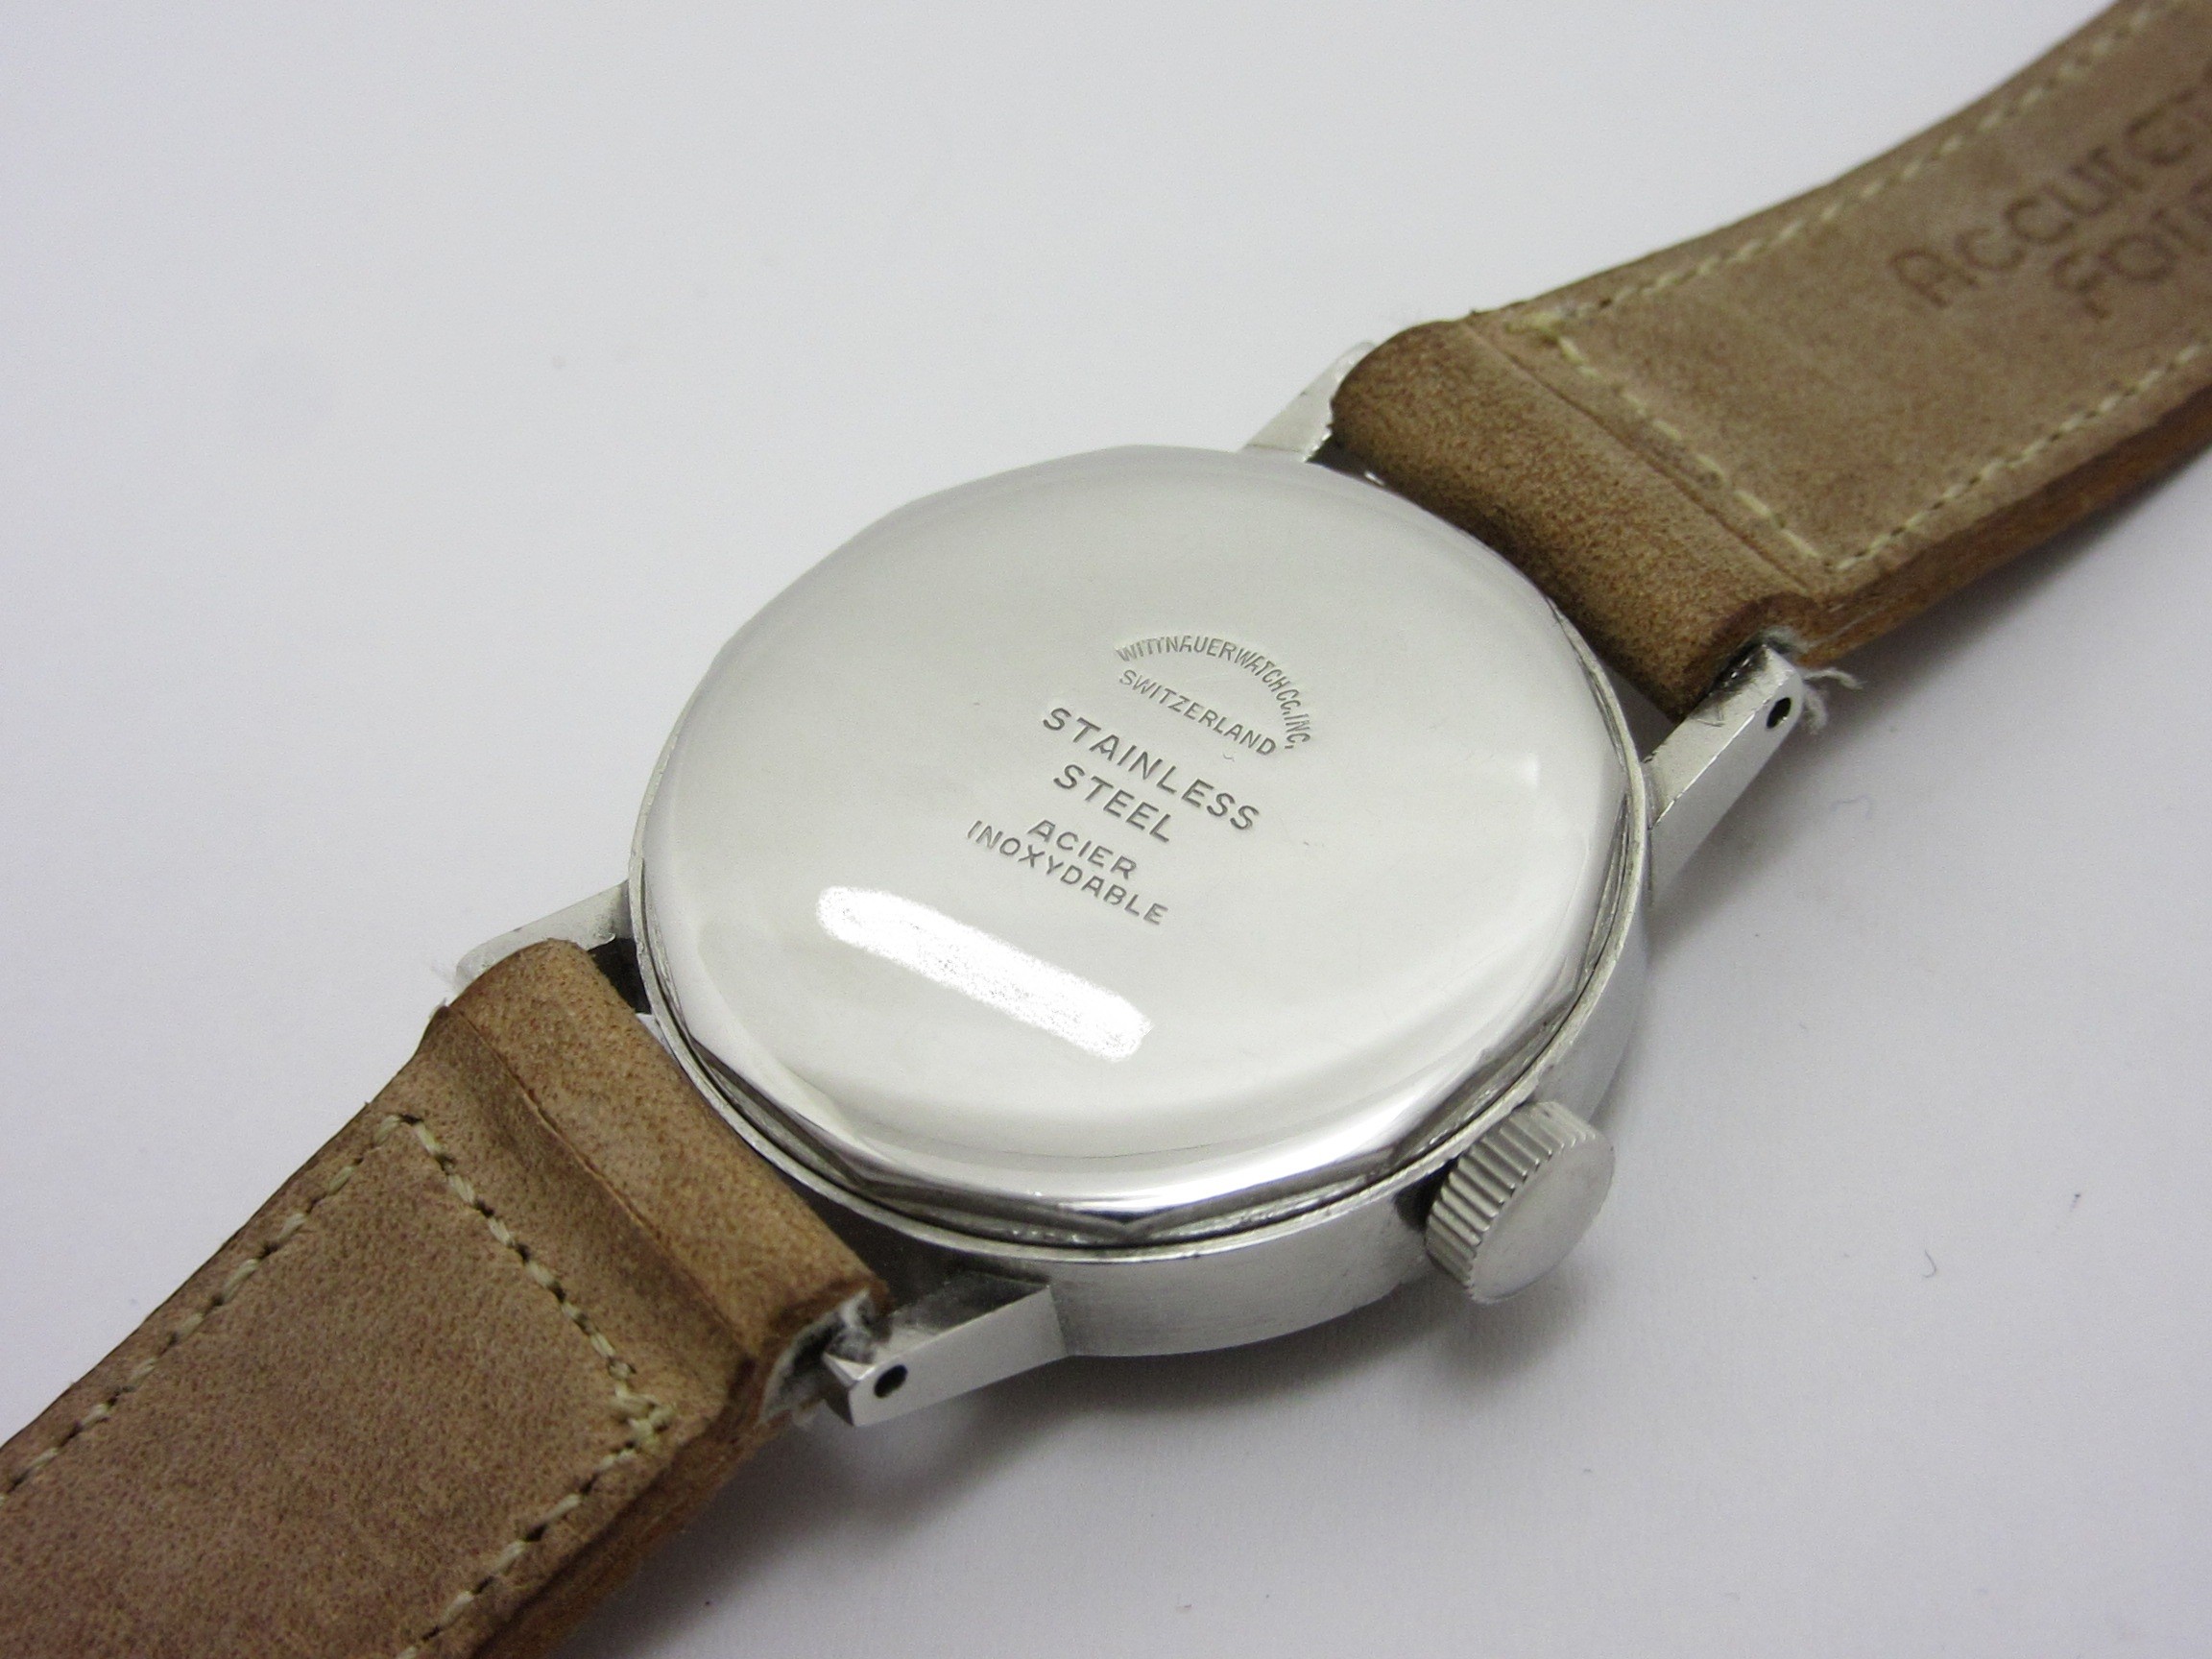 ウィットナー WITTNAUER ”ブラックグレー ツートン ダイヤル” シリンダーケース スクリューバック 手巻機械式ムーブ|ロレックス・アンティーク 腕時計 中古品販売買取なら大阪 米田屋